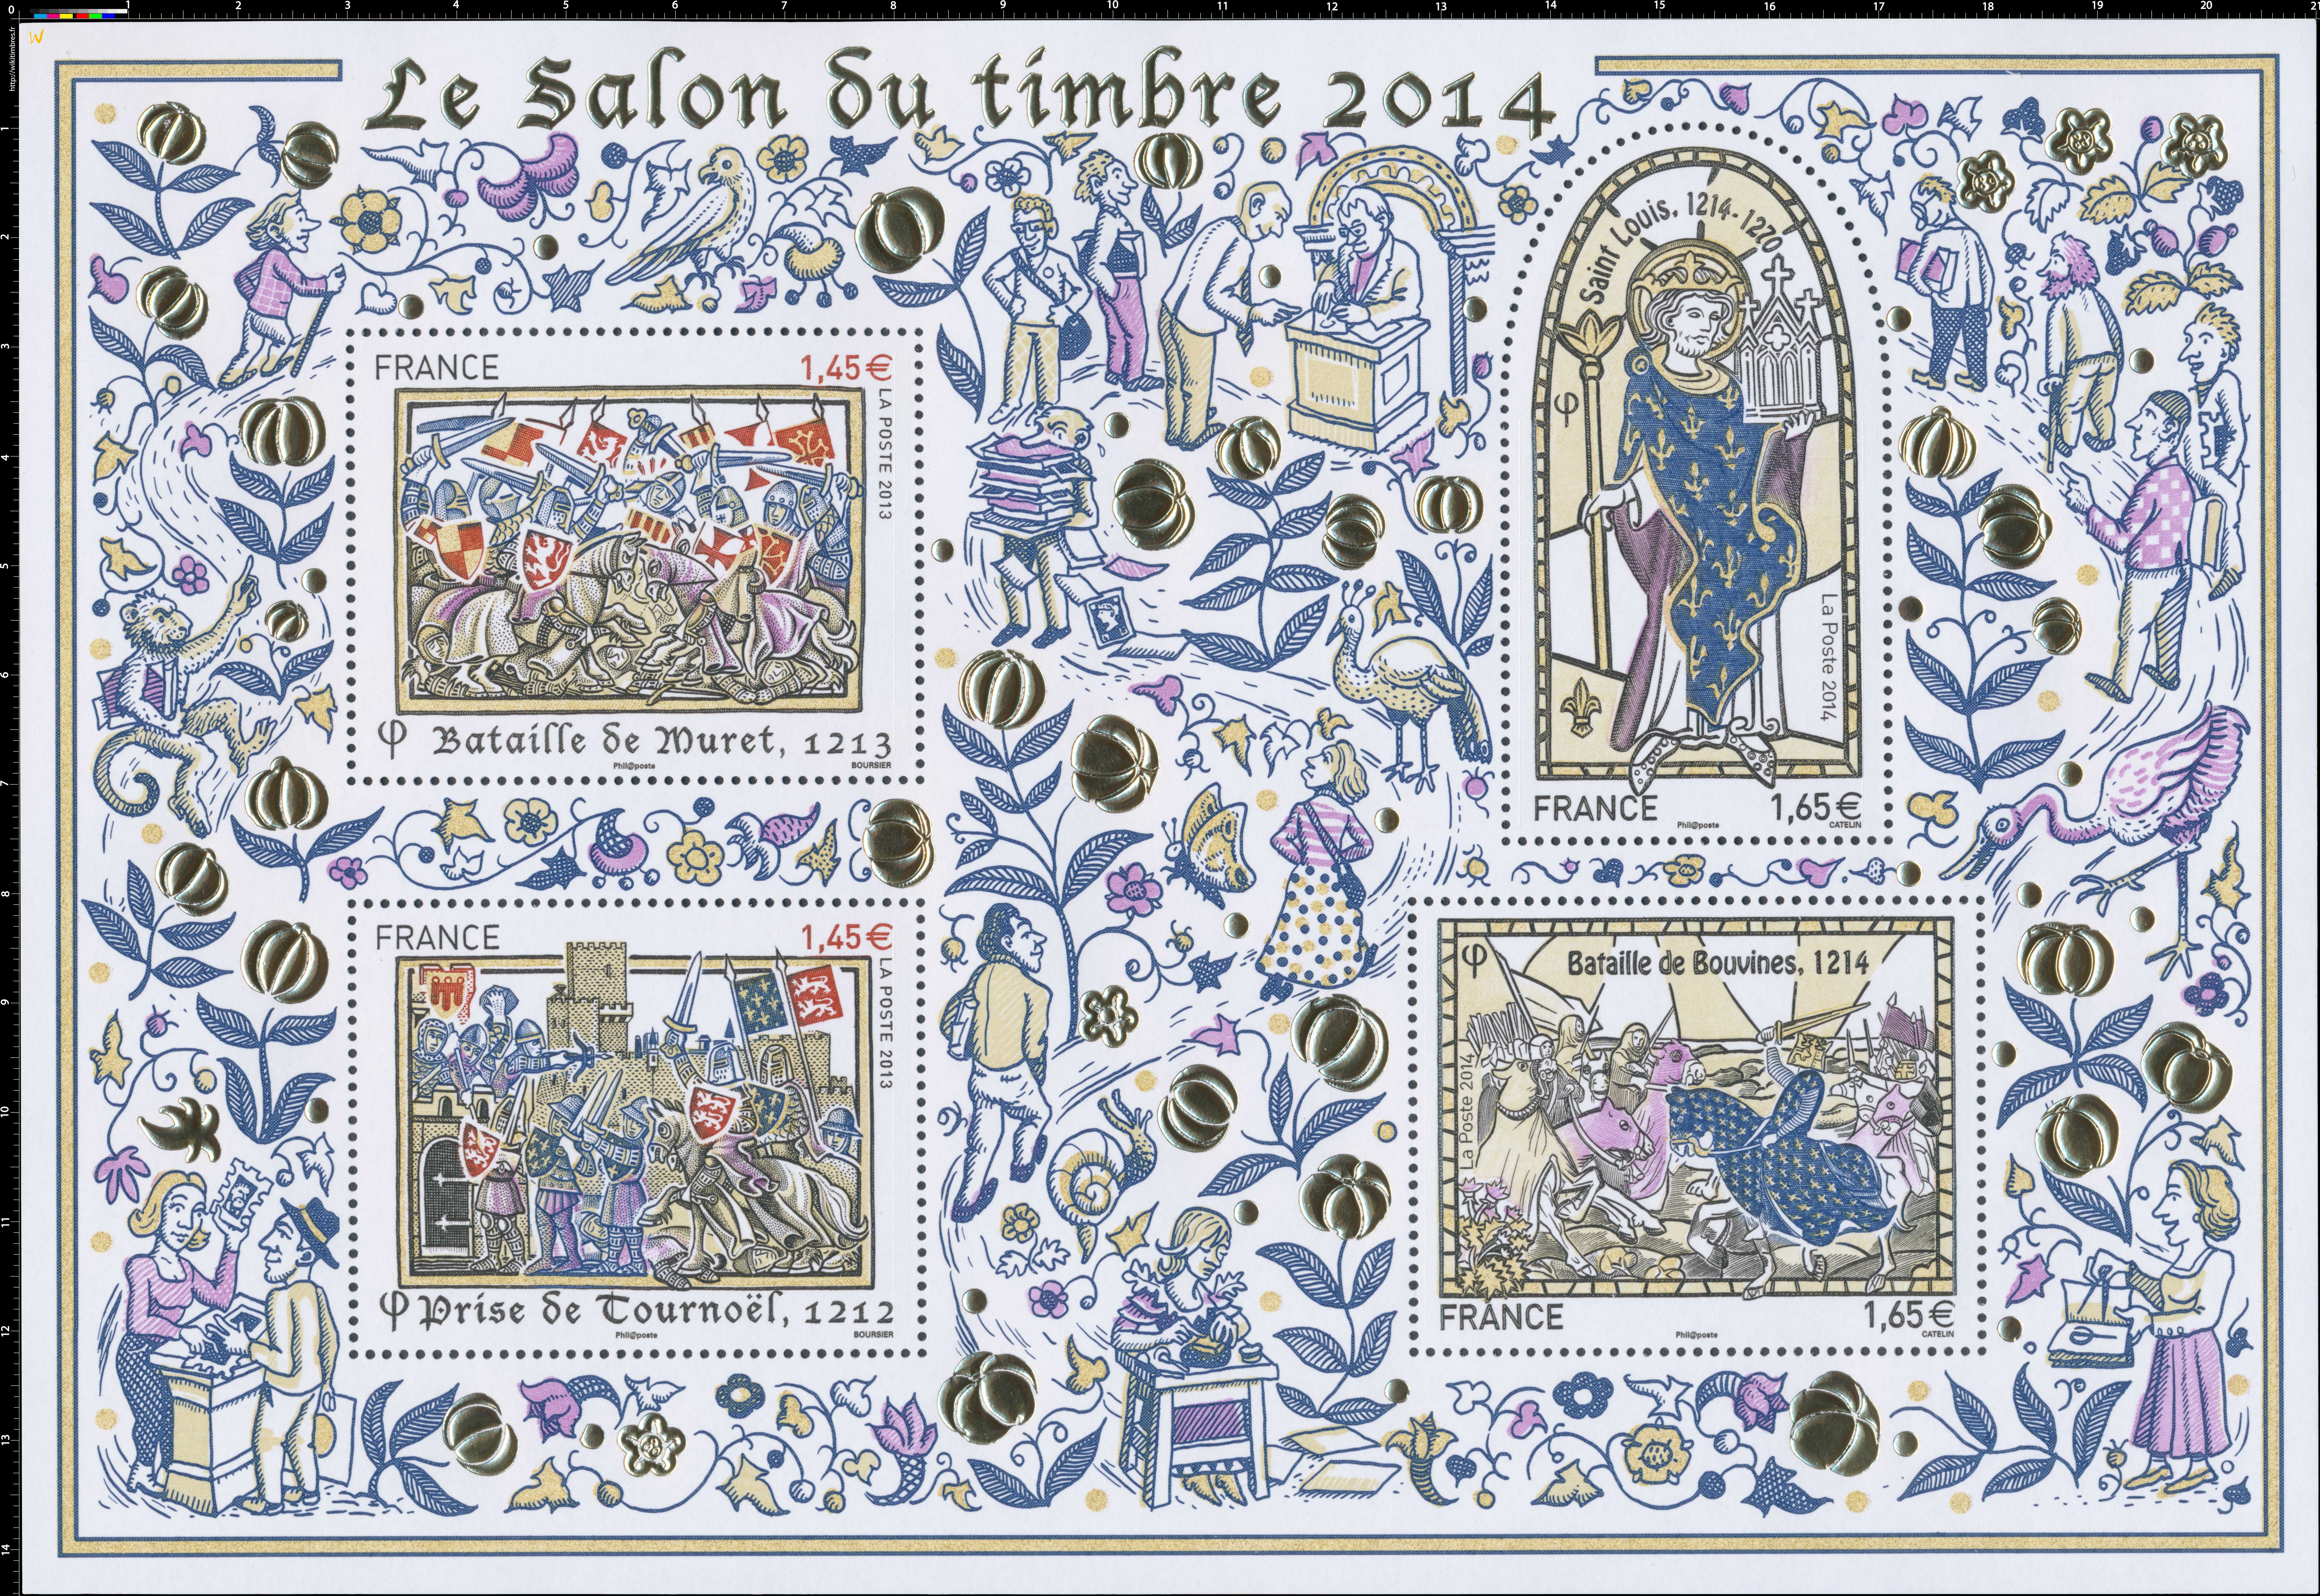 2014 Le salon du timbre